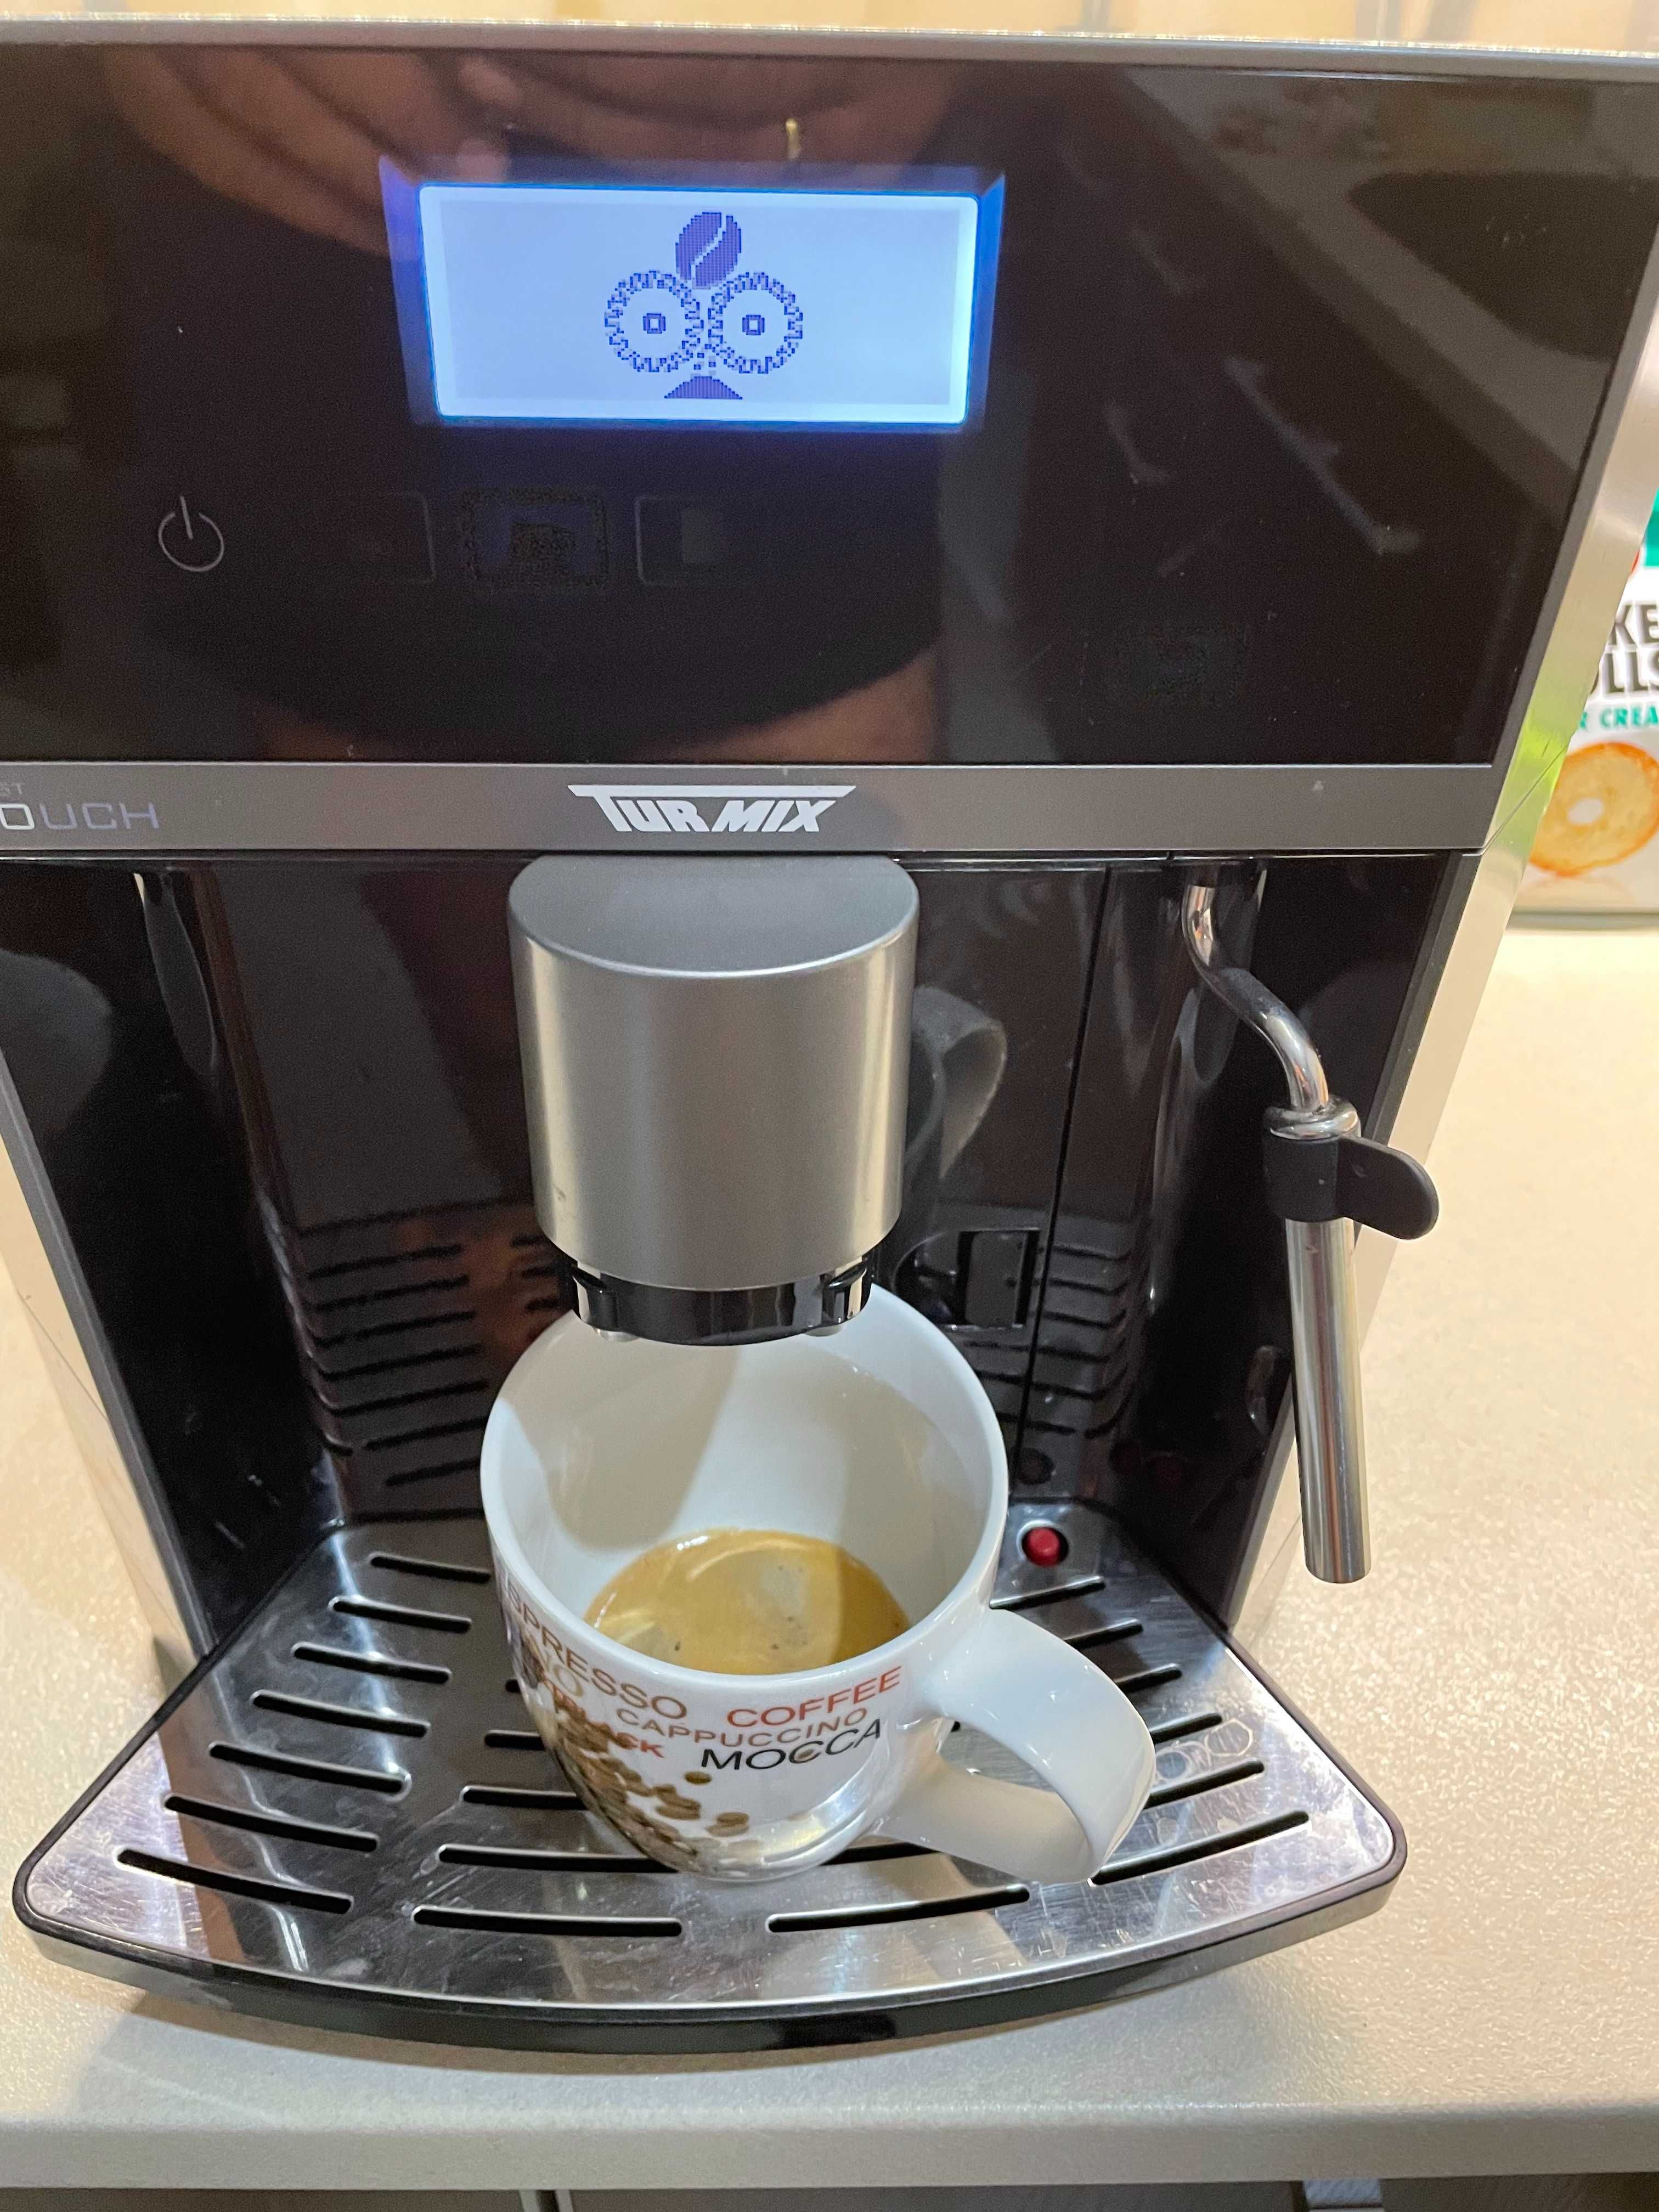 кафе машина робот